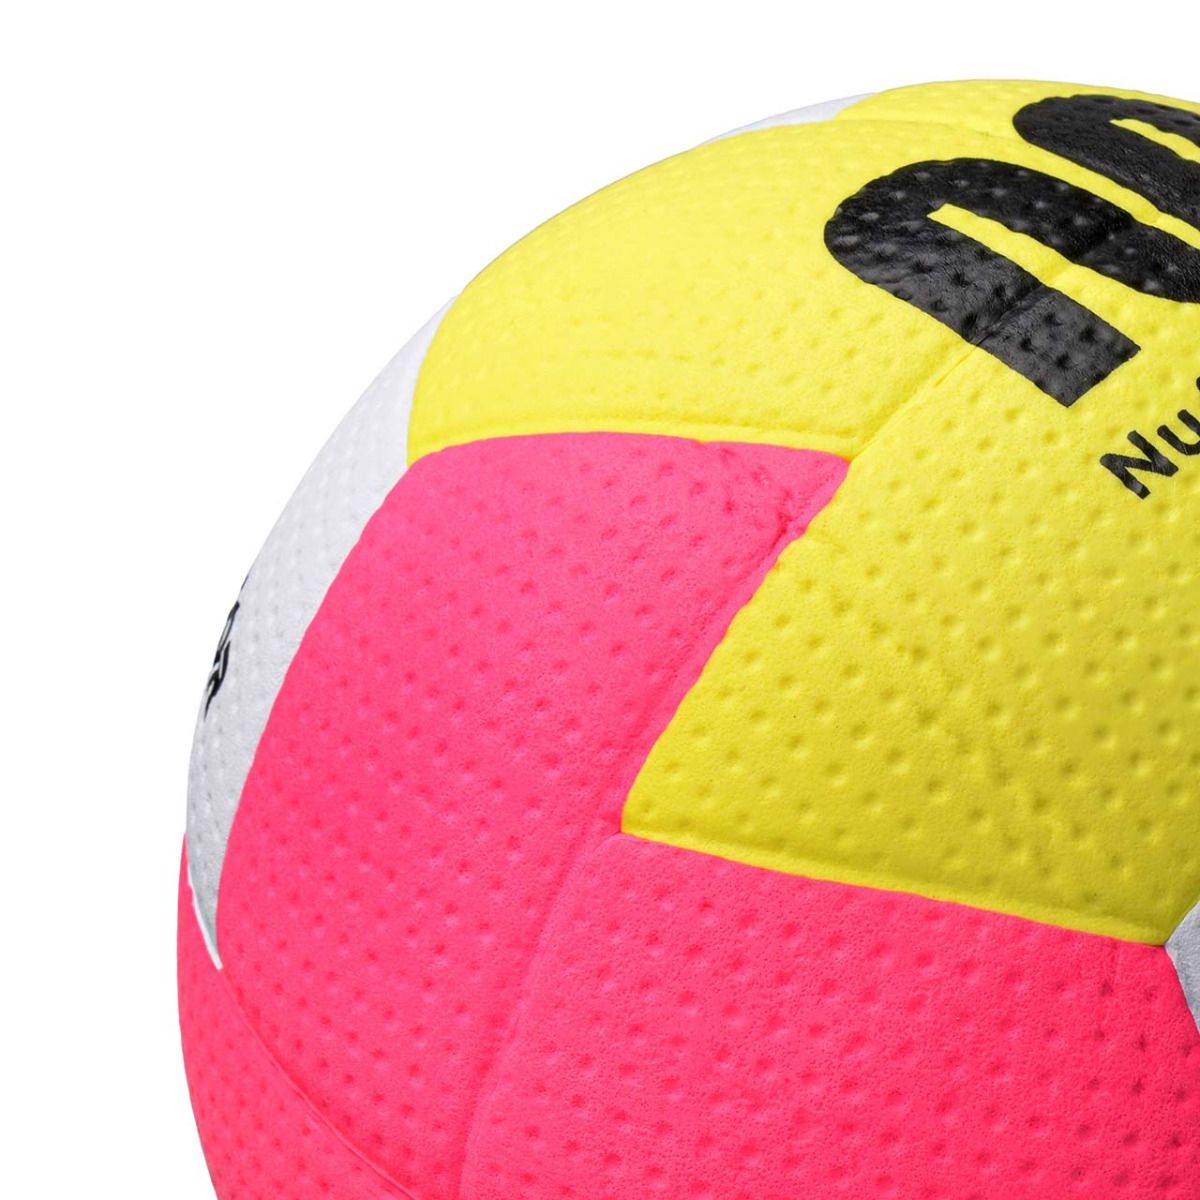 Meteor Handball Nuage Mini 0 16695